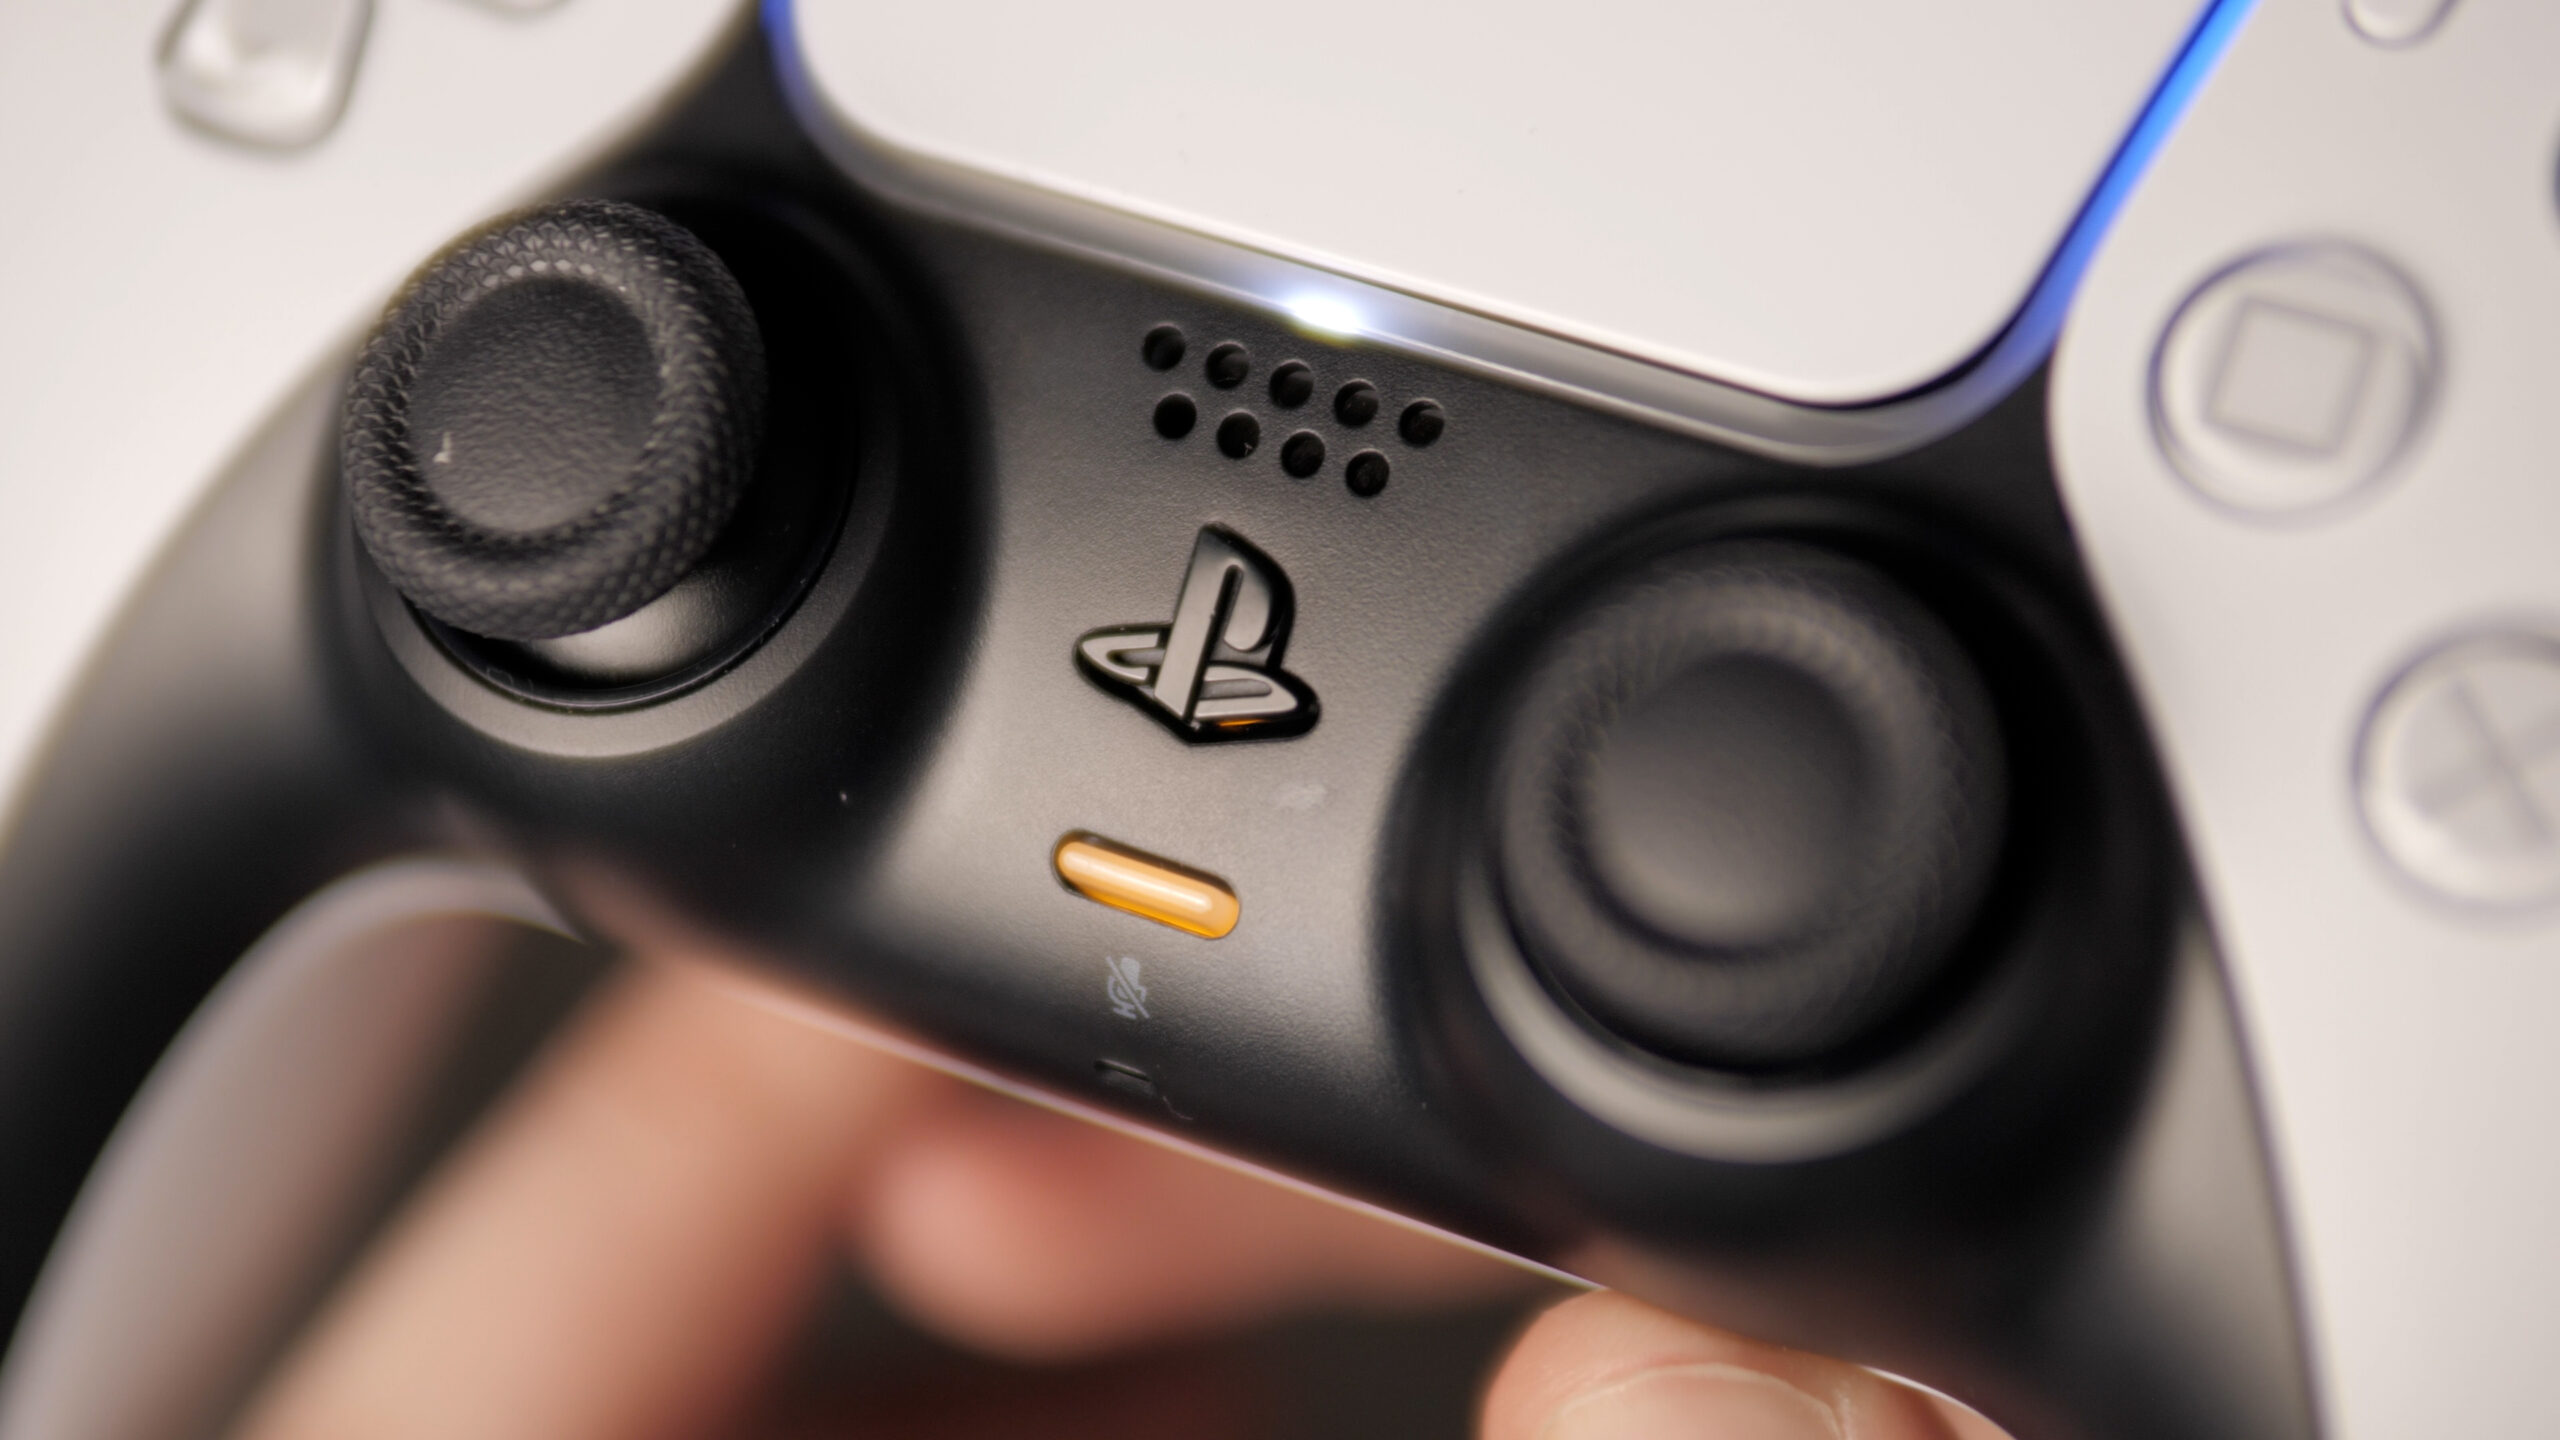 Console Playstation 5  Comment dépoussiérer sa PS5